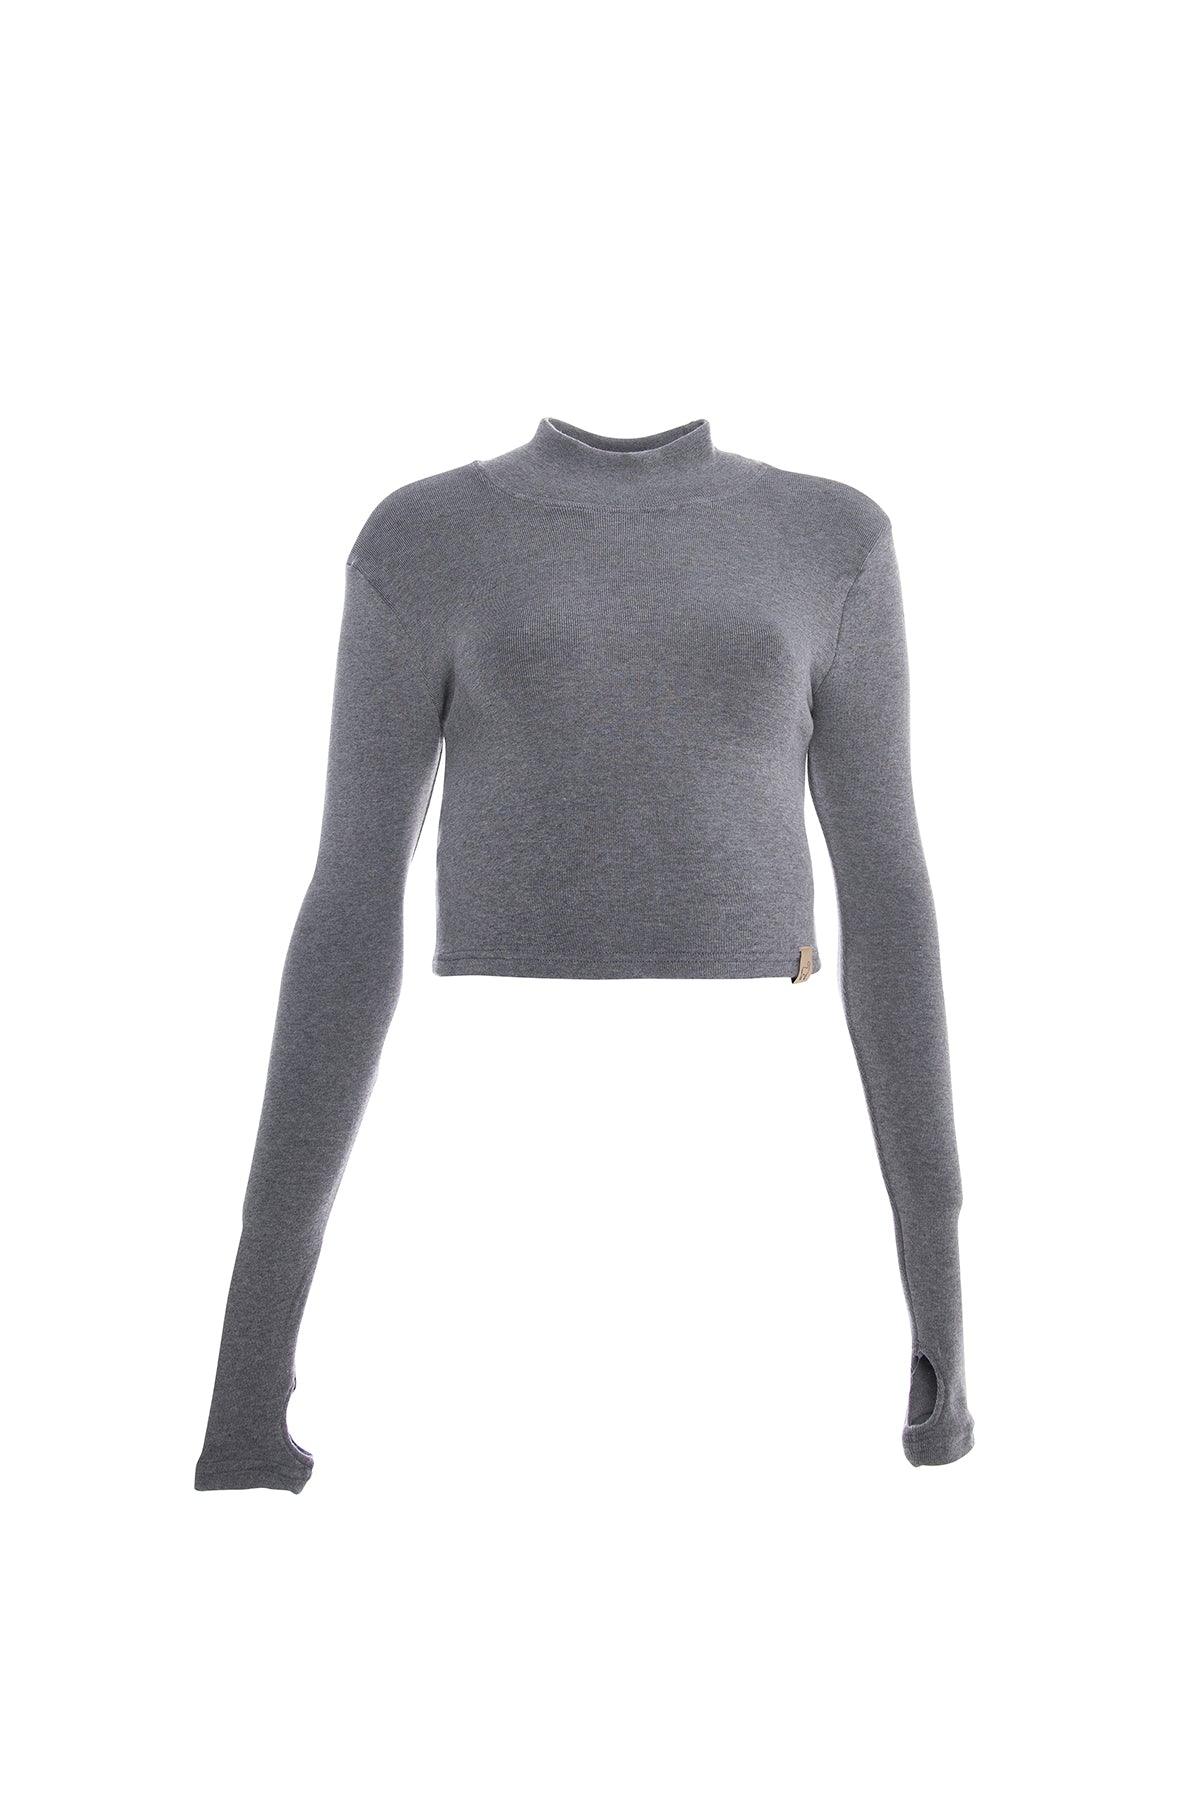 Soft, fine-knit turtleneck sweater in grey for women.